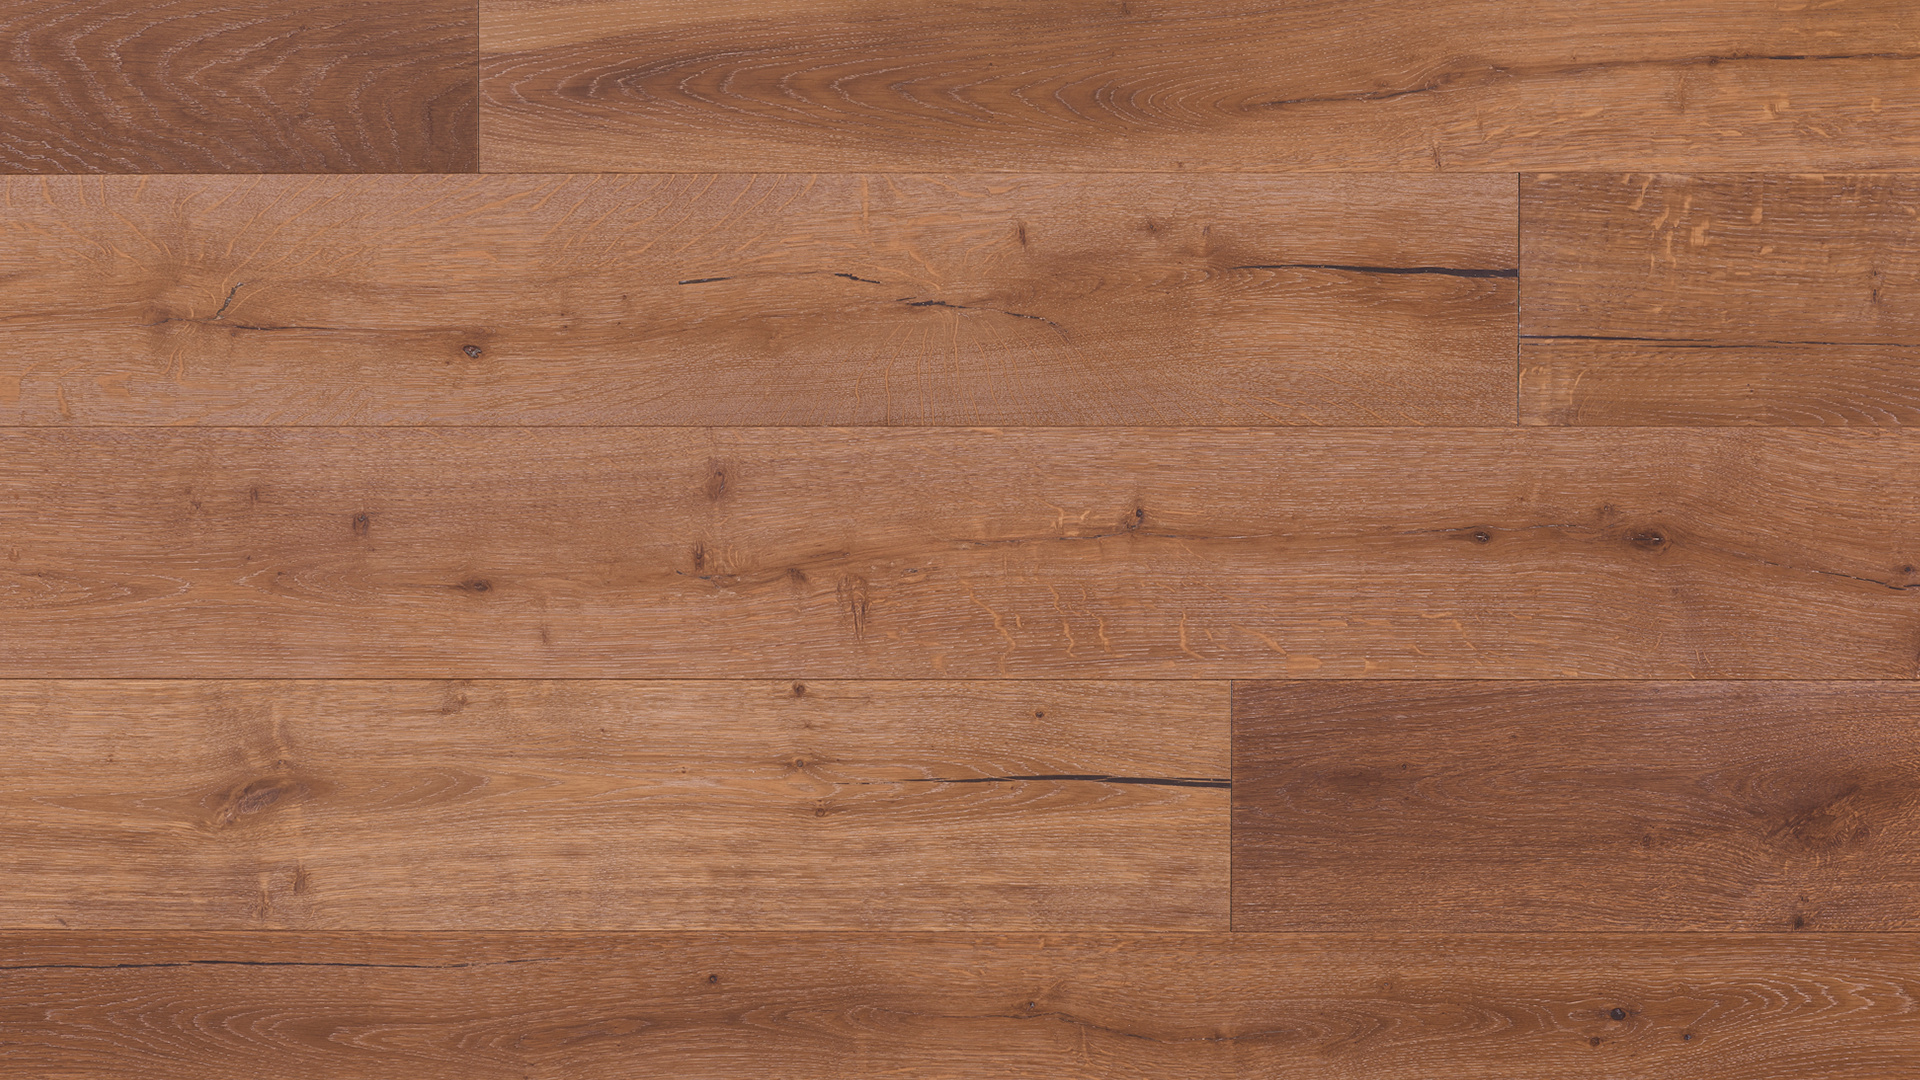 Hardwood floor beauty, Potenzial unvermeidlich panzer, Dark wood floor pattern, Einfach zu verstehen, 1920x1080 Full HD Desktop